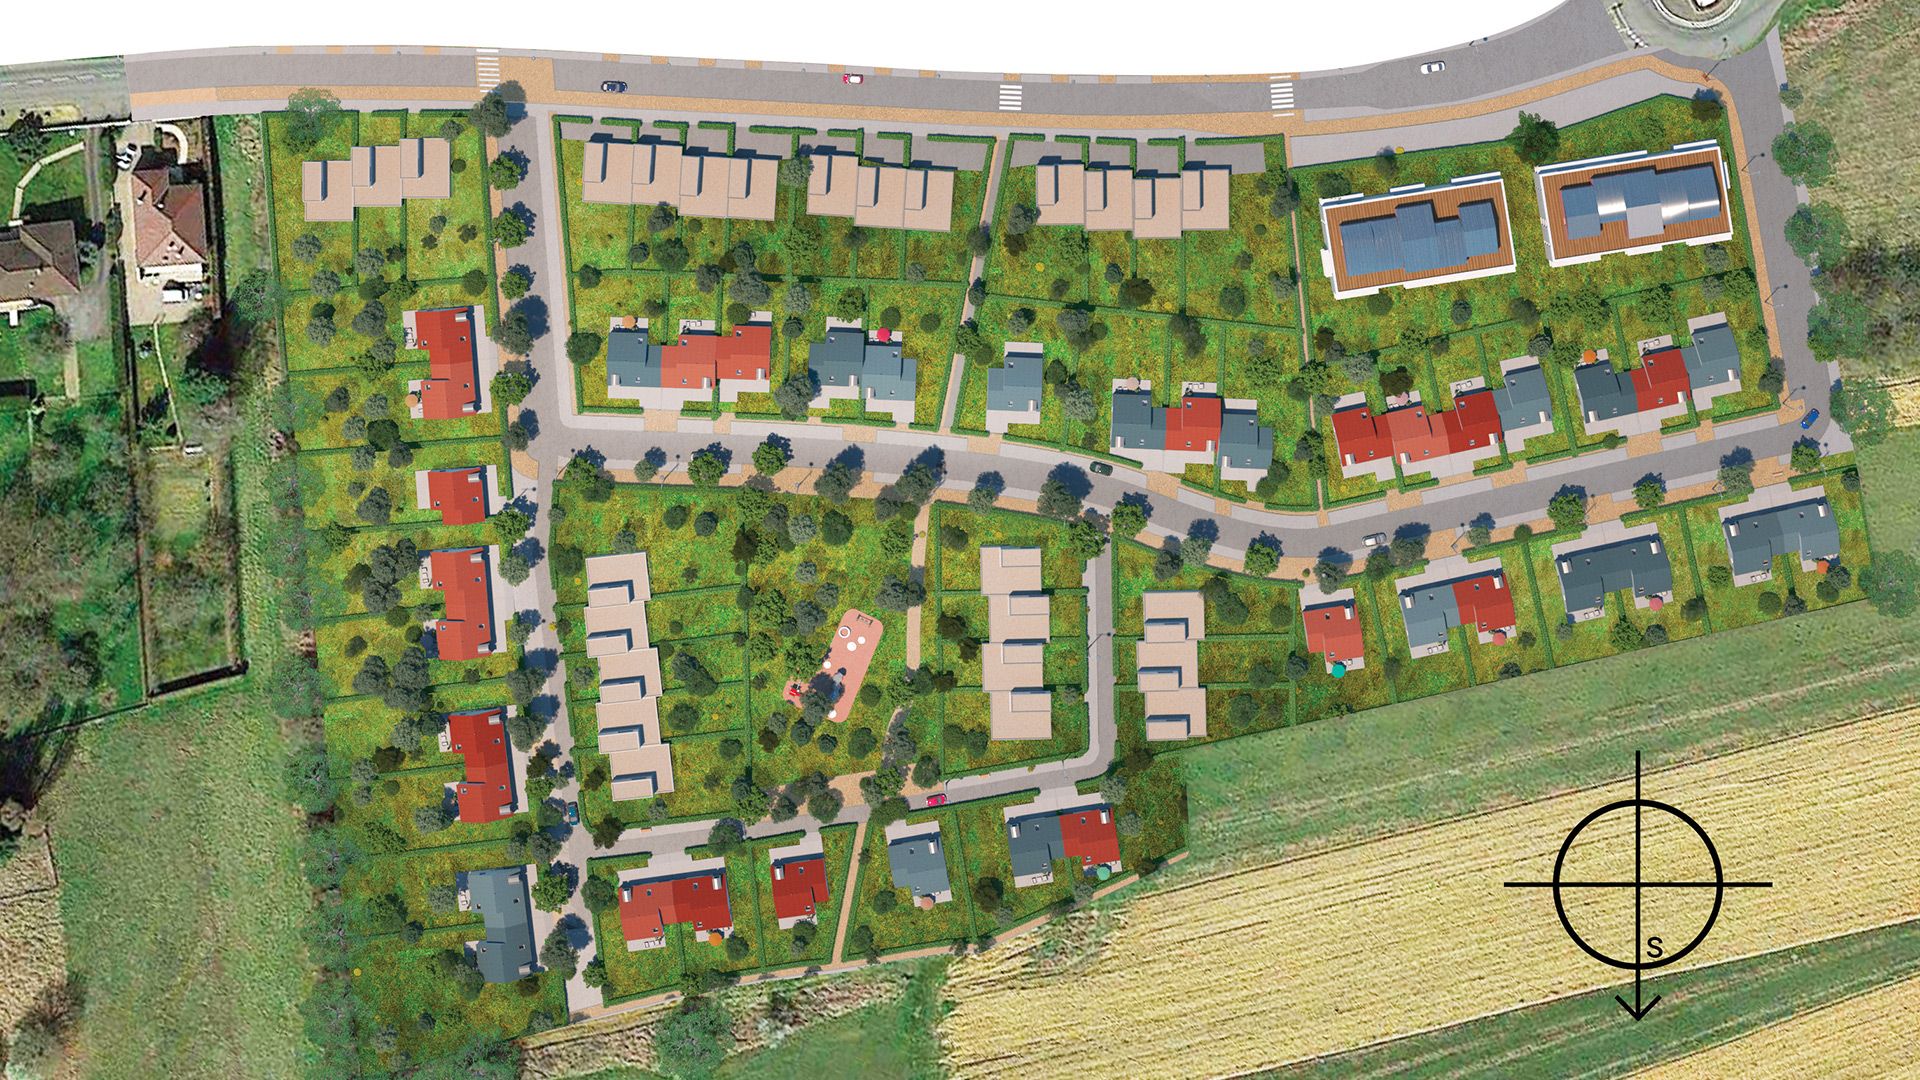 Concept Immobilier - Les Jardins de Ladelle - Lotissement à Fameck - Plan de masse